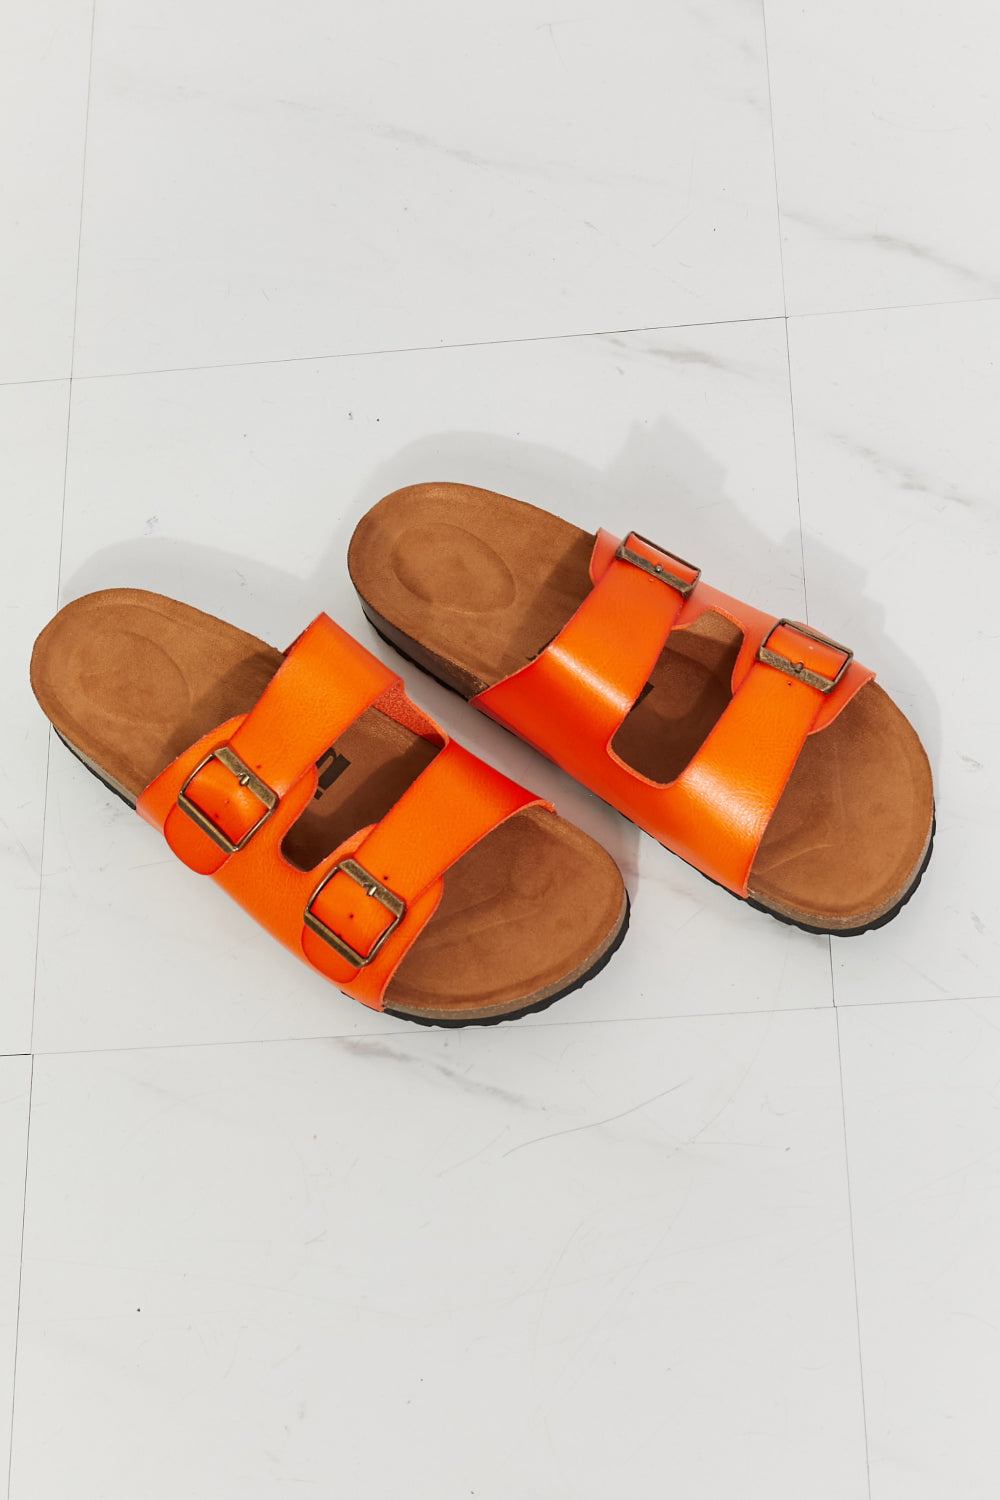 MMShoes Feeling Alive Double Banded Slide Sandals in Orange - nailedmoms